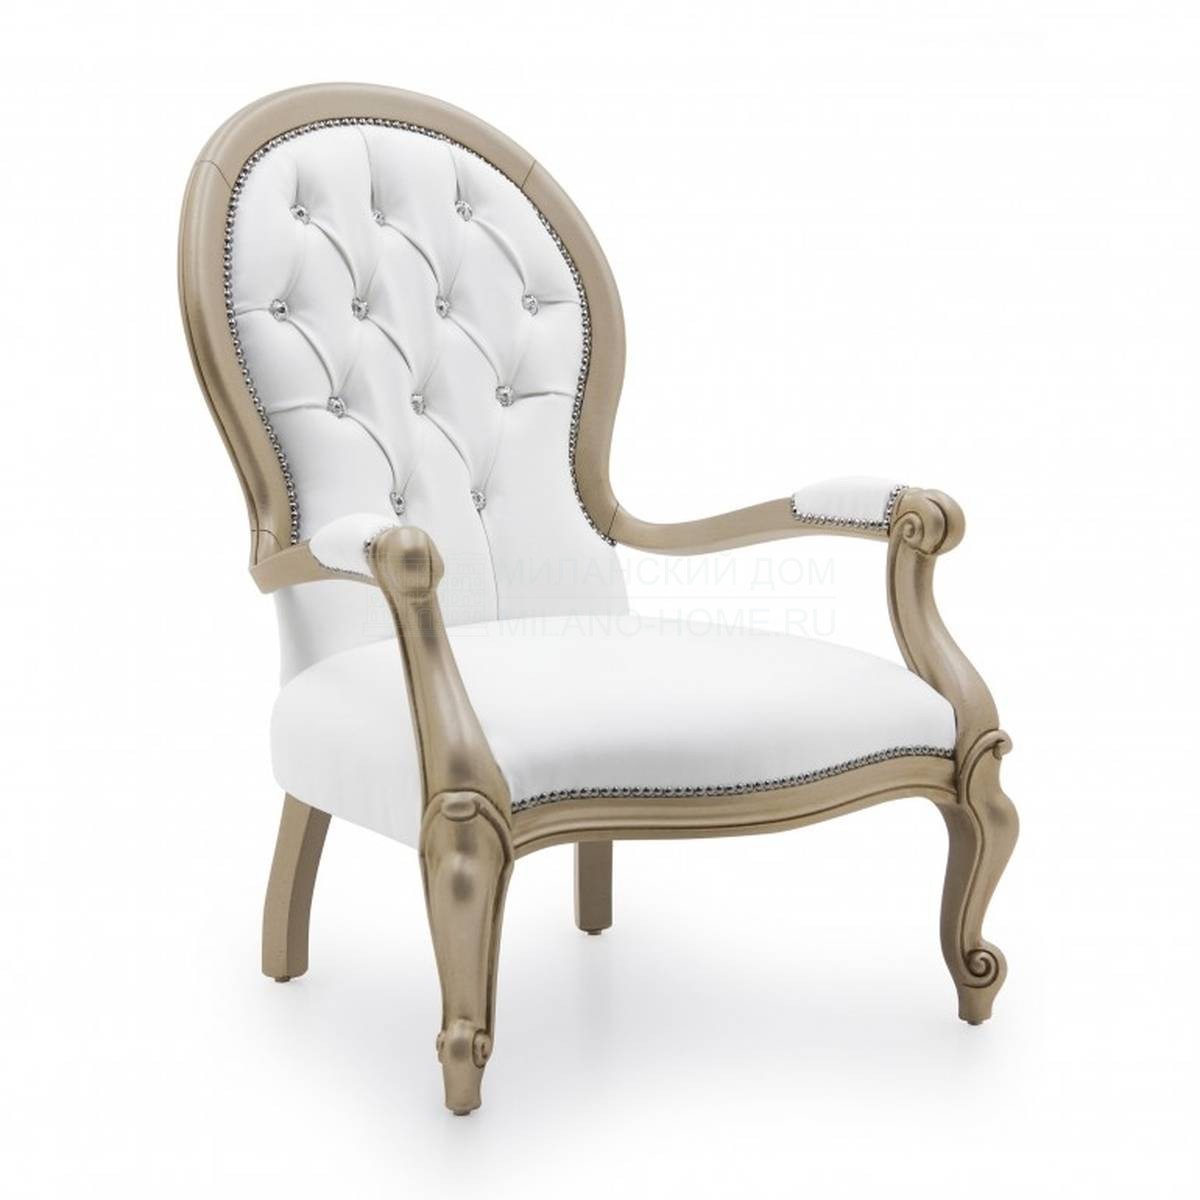 Кресло Diva chair из Италии фабрики SEVEN SEDIE